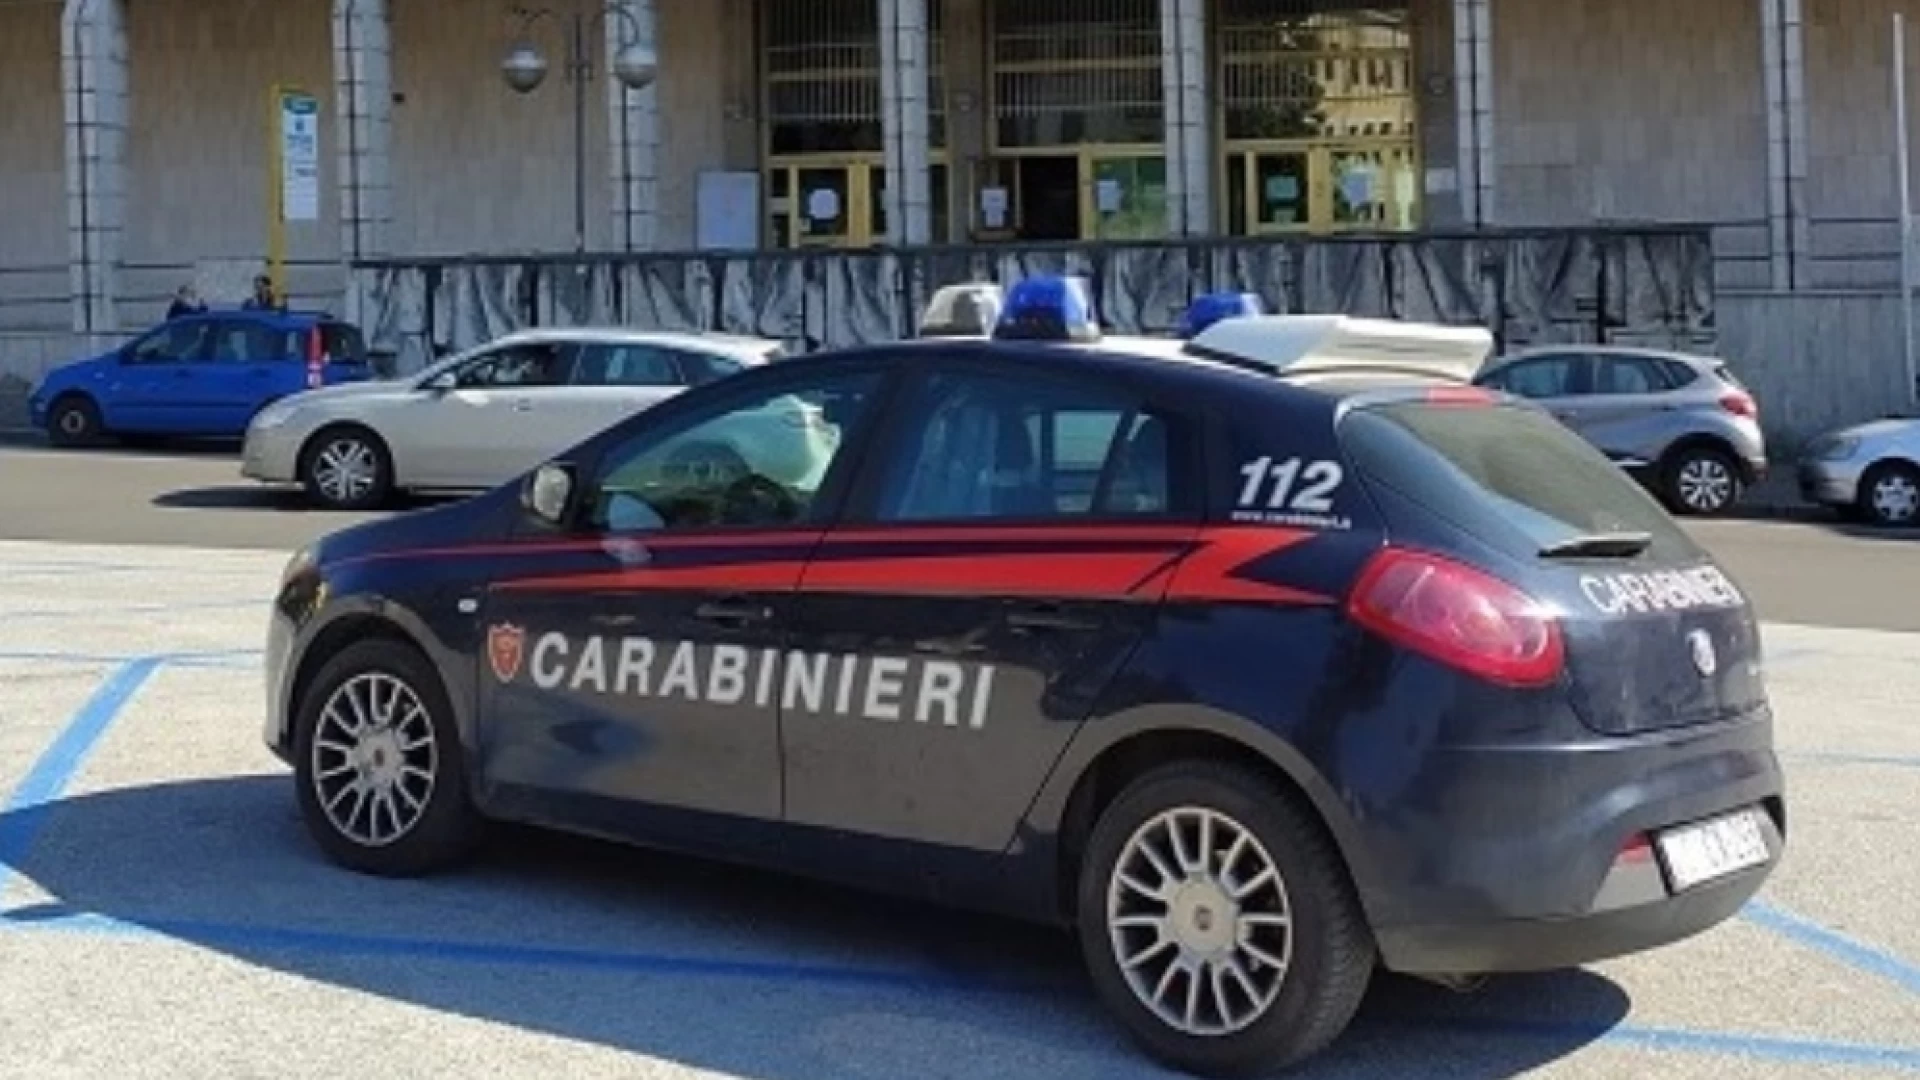 Isernia:Furto di un pantalone in un negozio, merce recuperata. Persona denunciata dai Carabinieri.